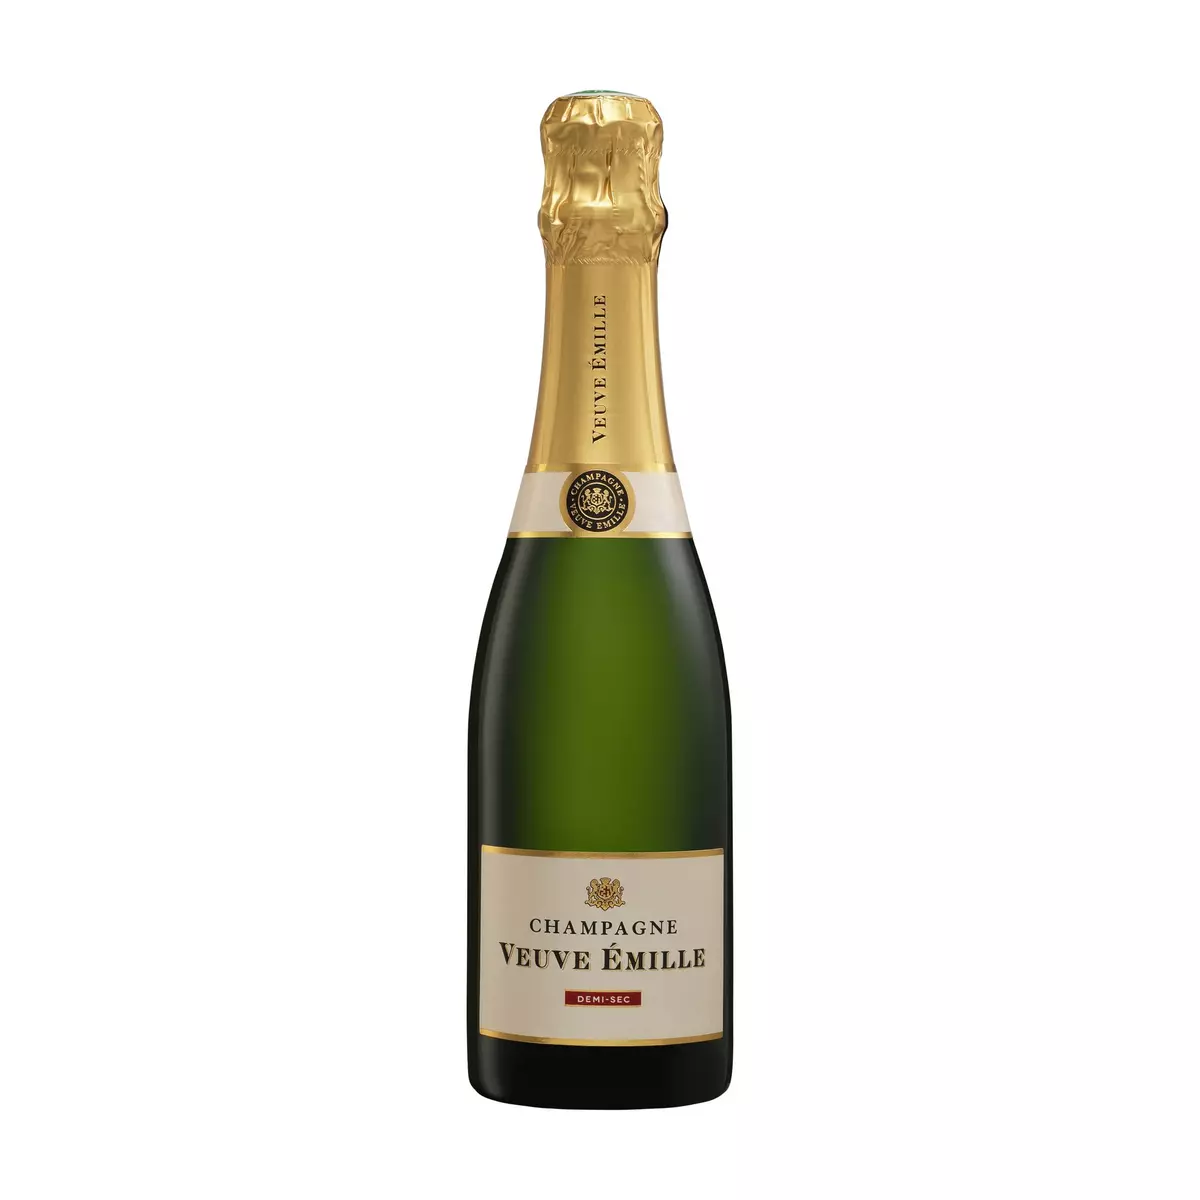 VEUVE EMILLE AOP Champagne demi-sec demi-bouteille Petit format 37,5cl